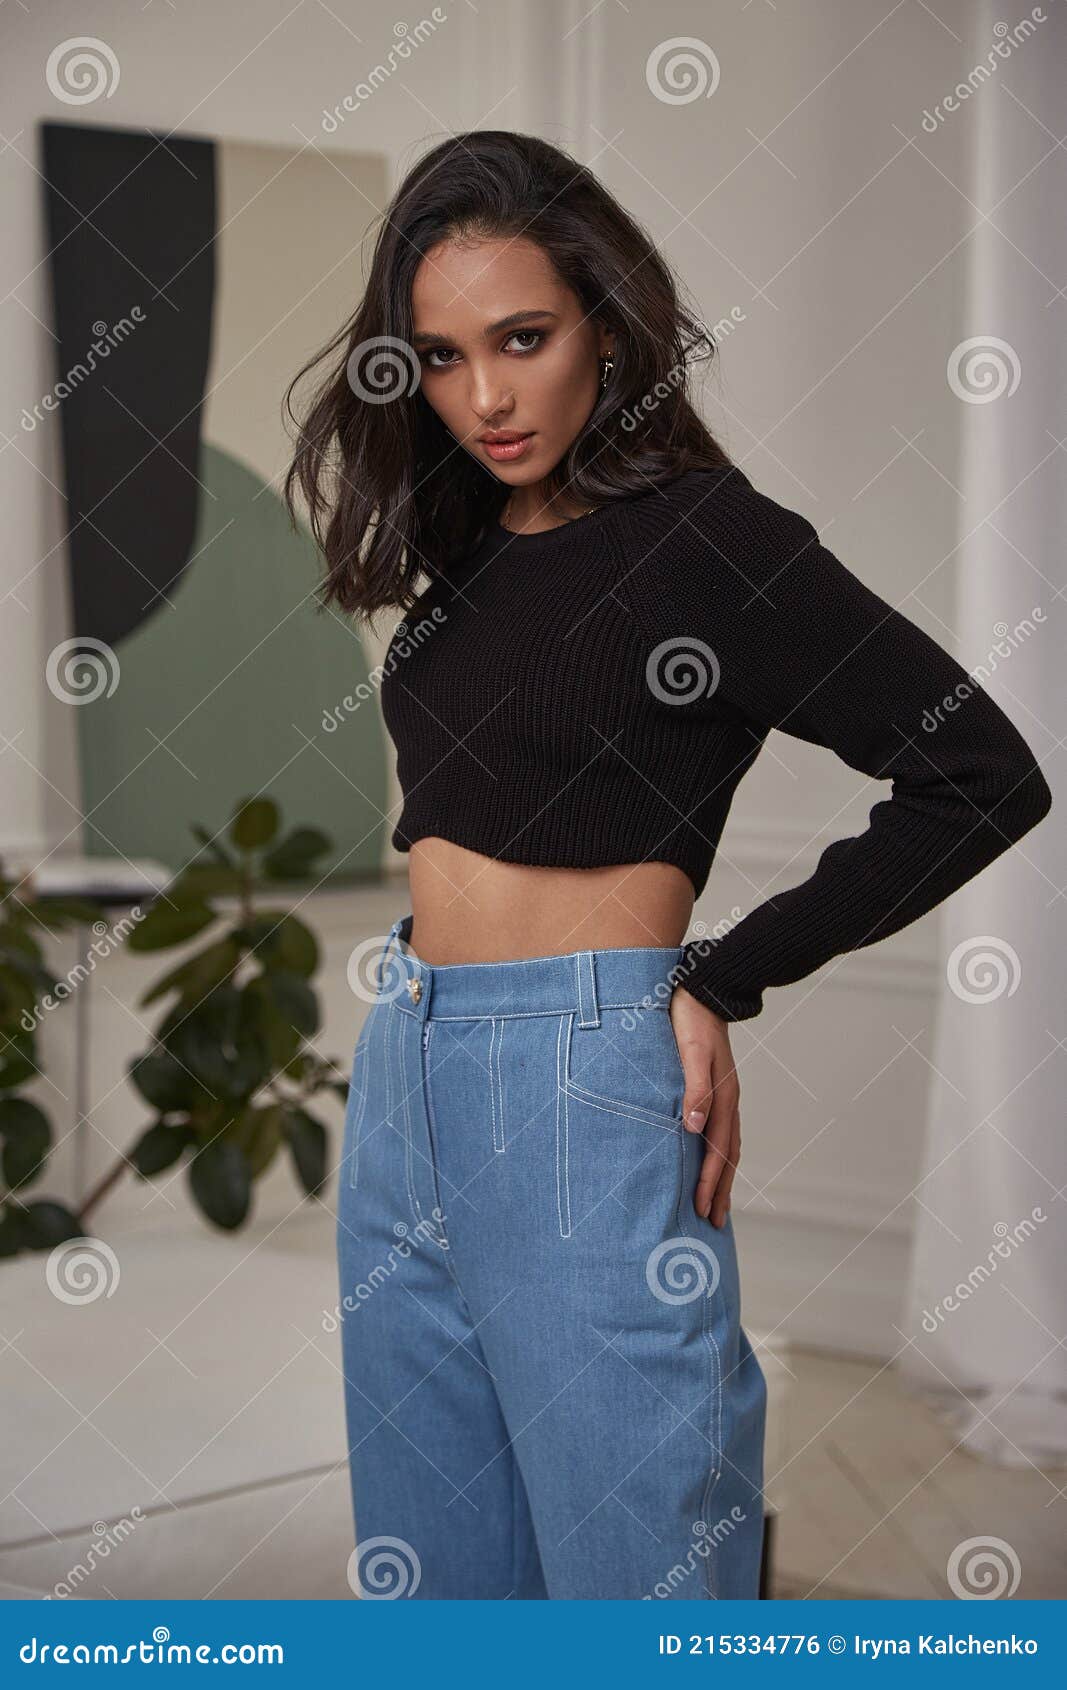 Moda Hermosa Modelo Sexy Bonita Dama Piel Bronceada Oscura Mujer Morena Pelo Desgaste Denim Jeans Casual Oficina Estilo O Foto archivo - Imagen de estudio, actitud: 215334776